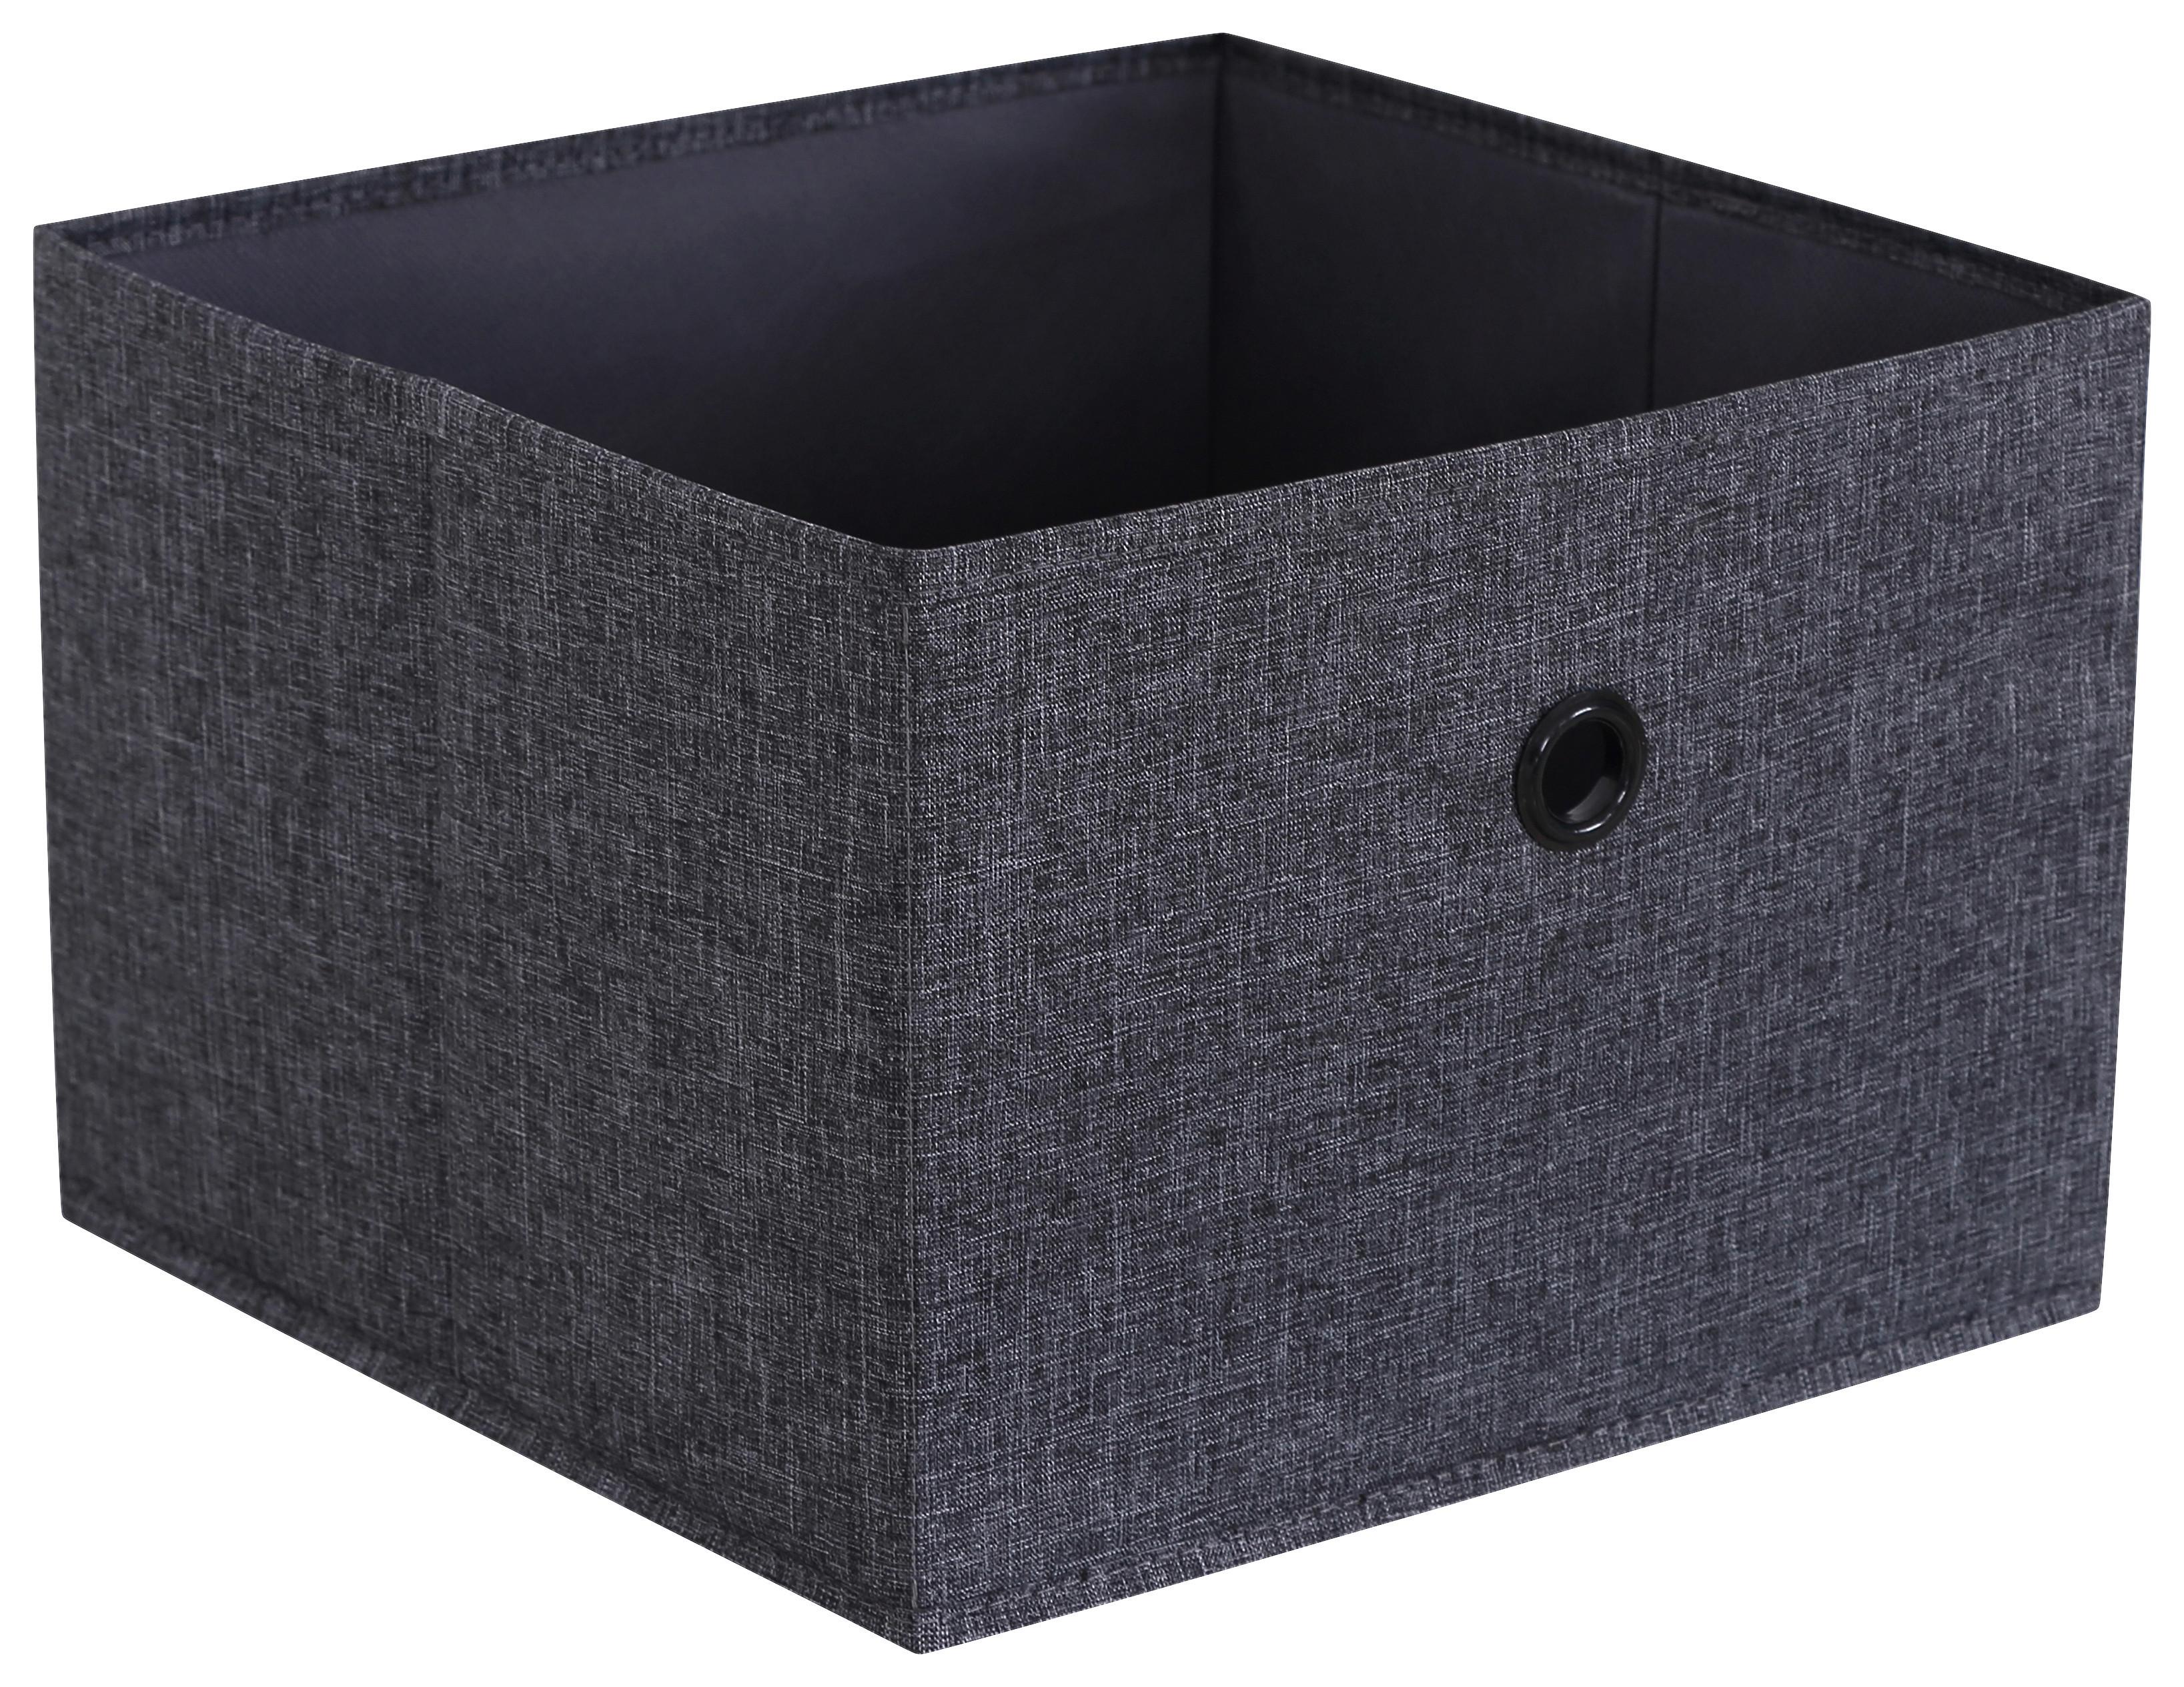 Úložný Box Tanya - šedá, Konvenční, karton/textil (29/20/29cm) - Modern Living